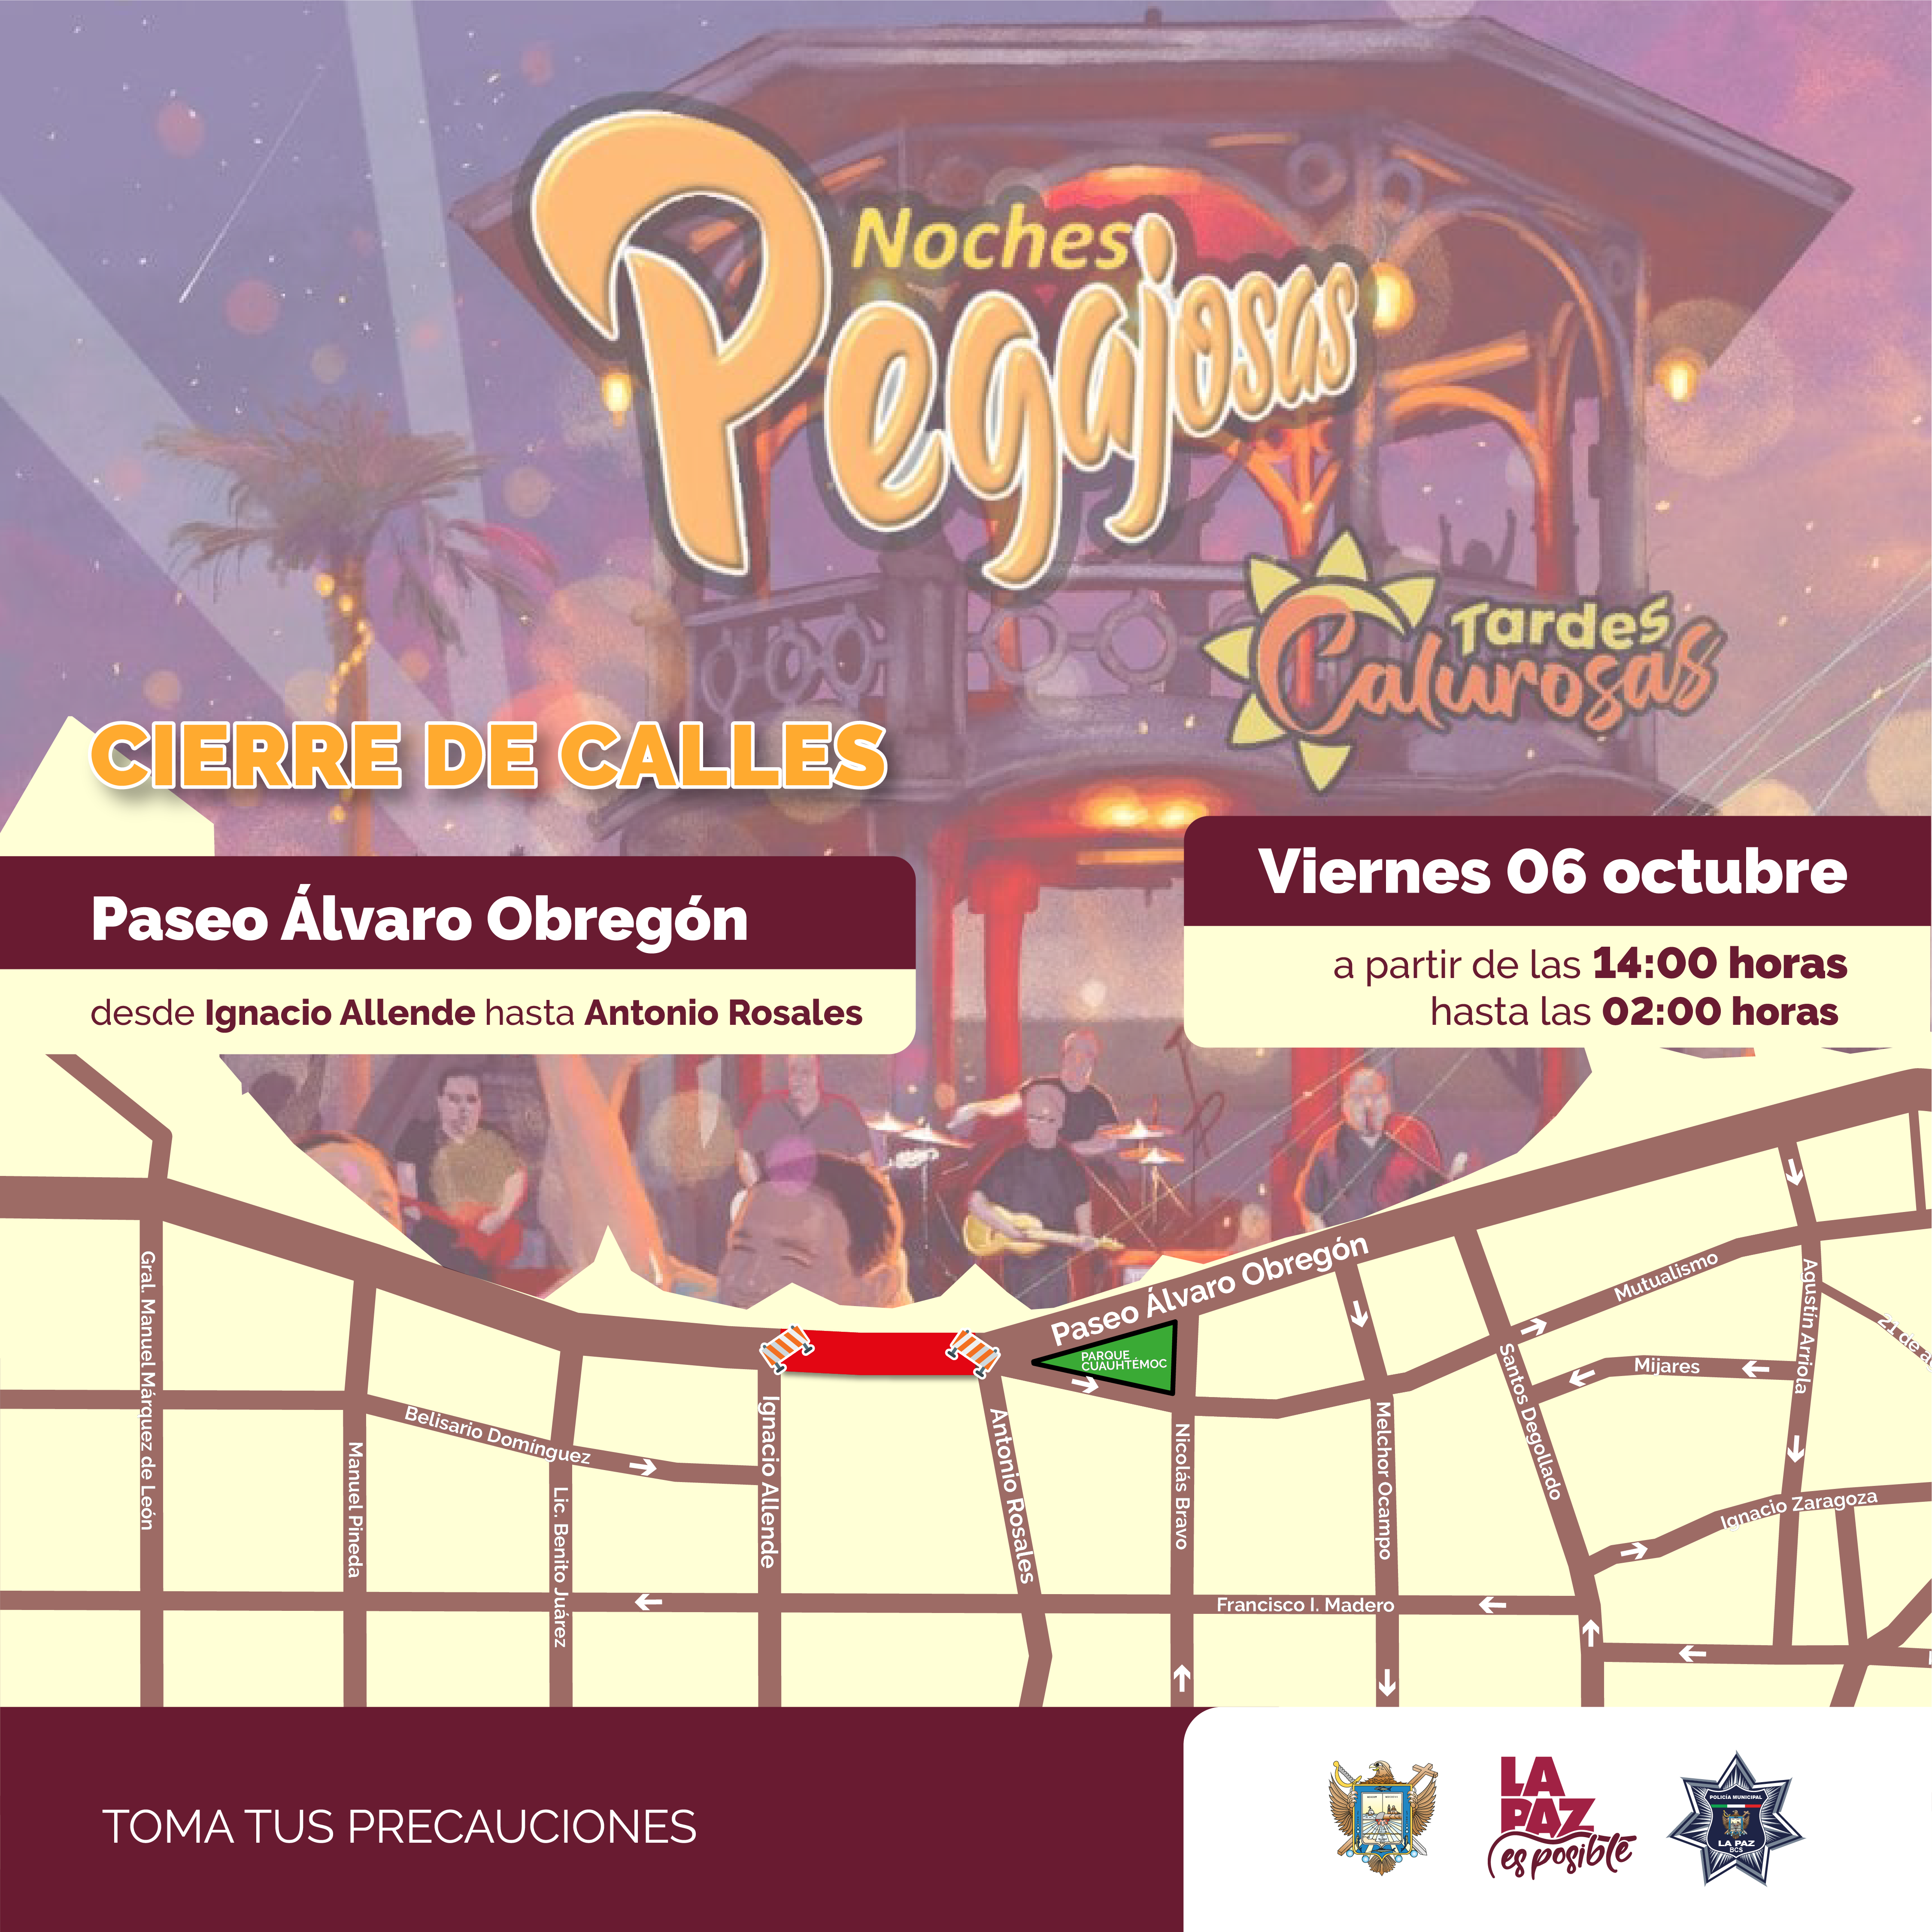 Por concierto de “Noches Pegajosas” y caminata habrá cierre vial en el Paseo Álvaro Obregón